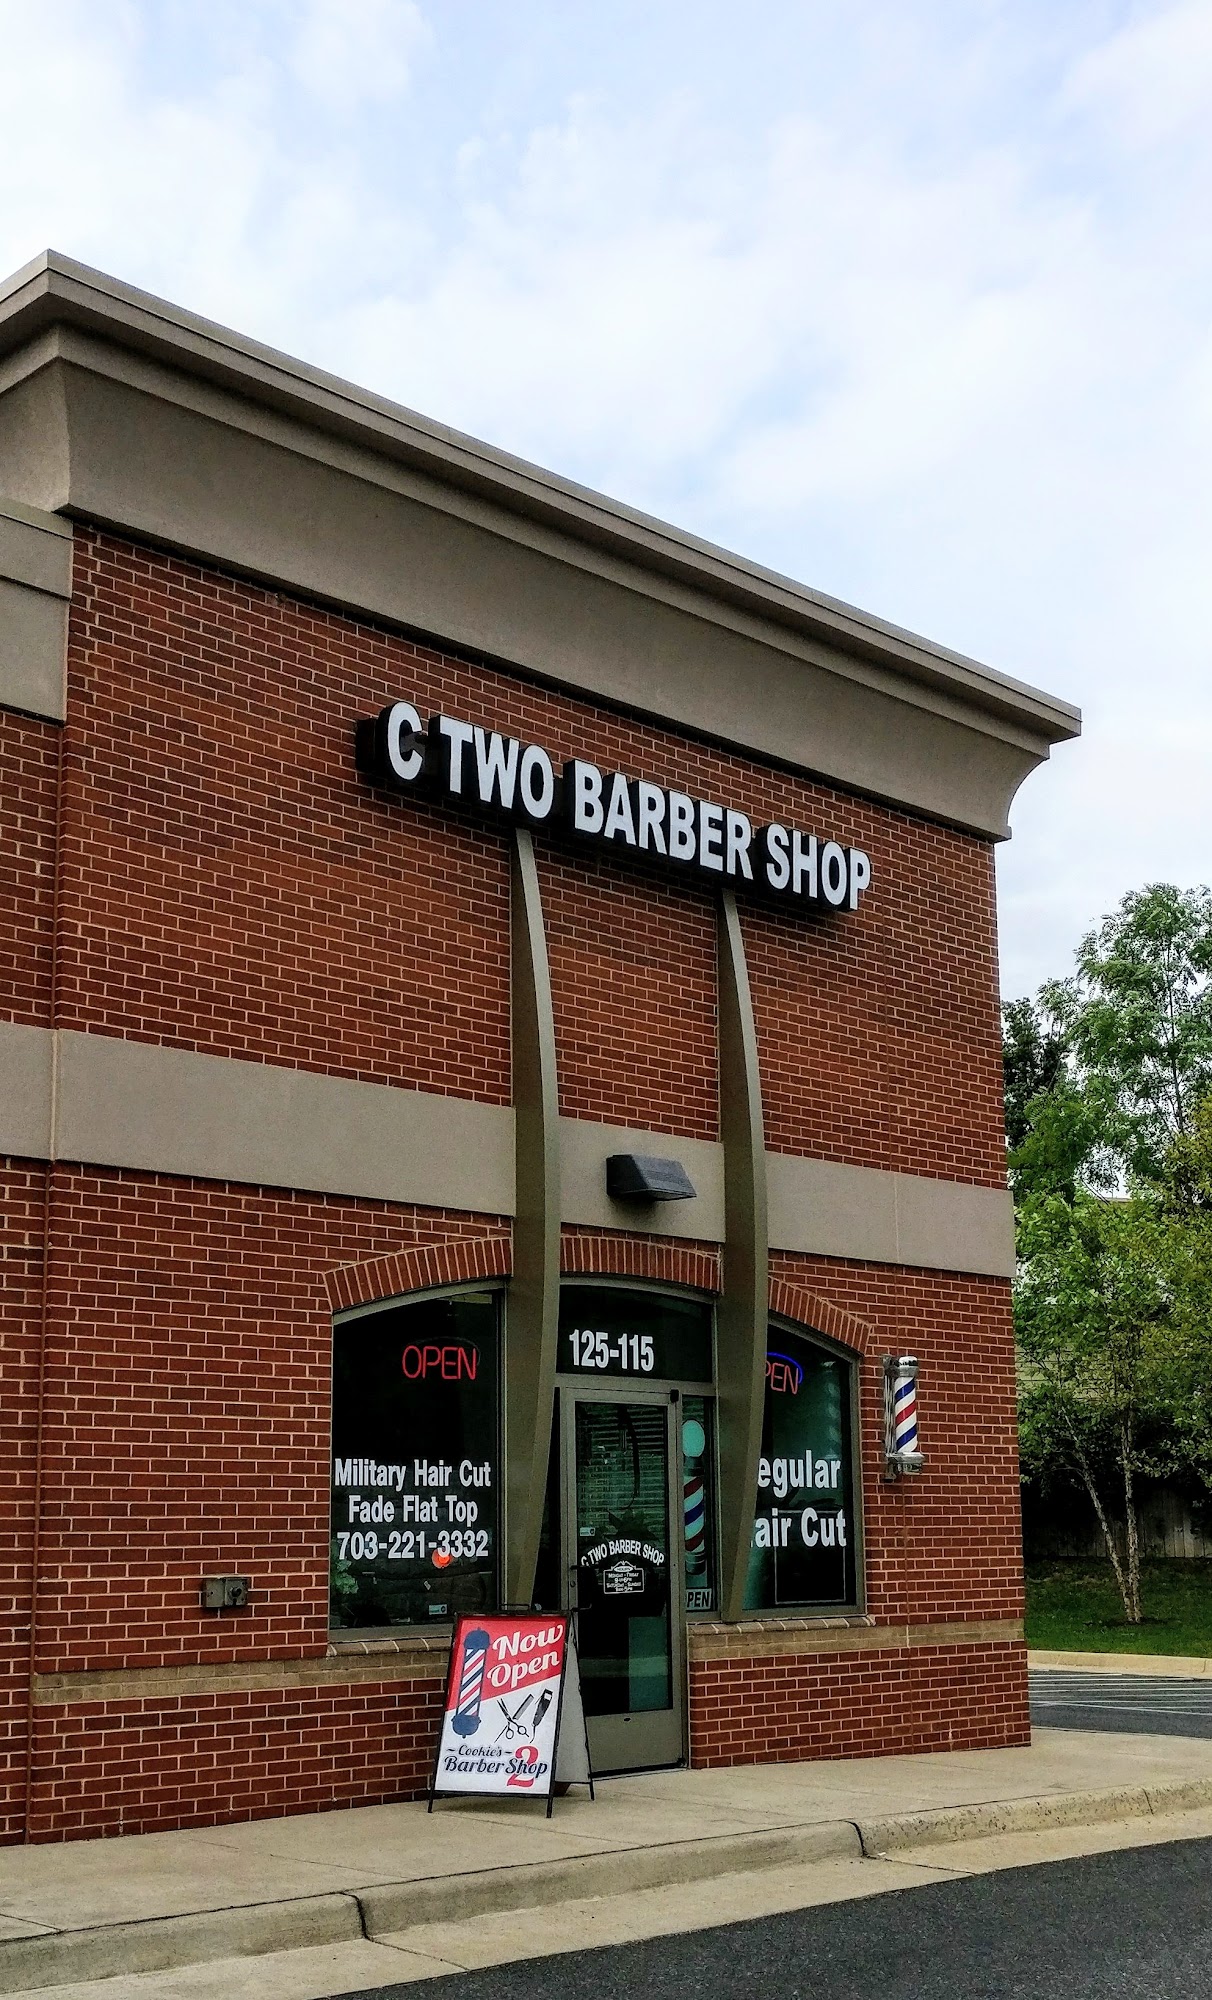 C Two Barbershop (Cookie's Barbershop)